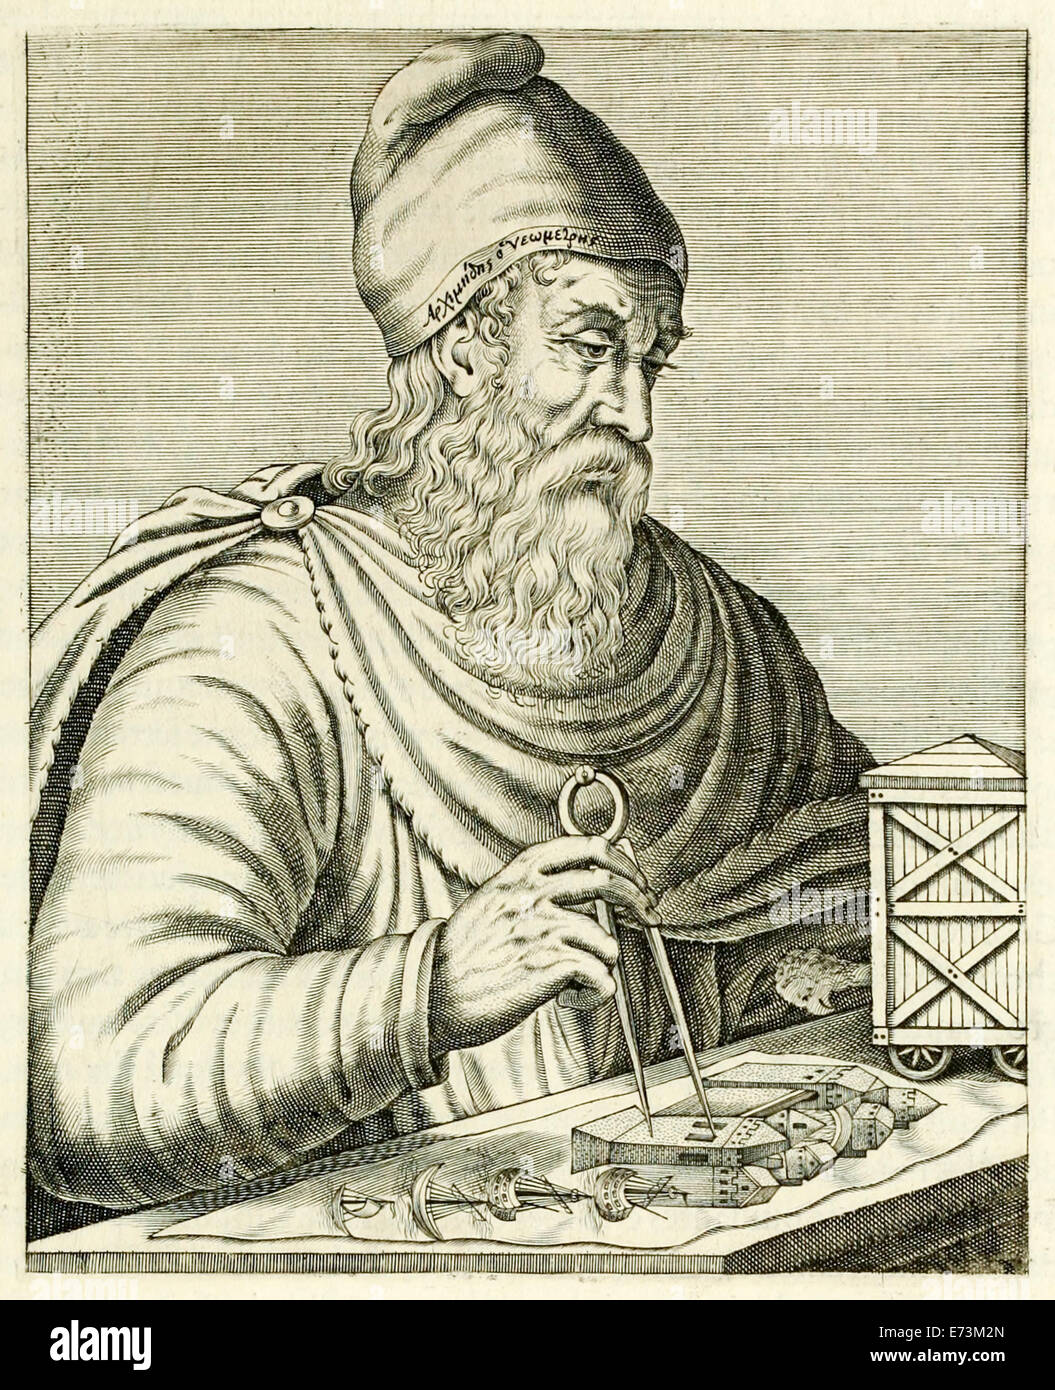 Antike griechische Mathematiker Archimedes von Syrakus (287-212BC), Physiker, Ingenieur, Erfinder und Astronom von "Echten Porträts..." von André Thévet veröffentlicht im Jahre 1594. Siehe Beschreibung für mehr Informationen. Stockfoto